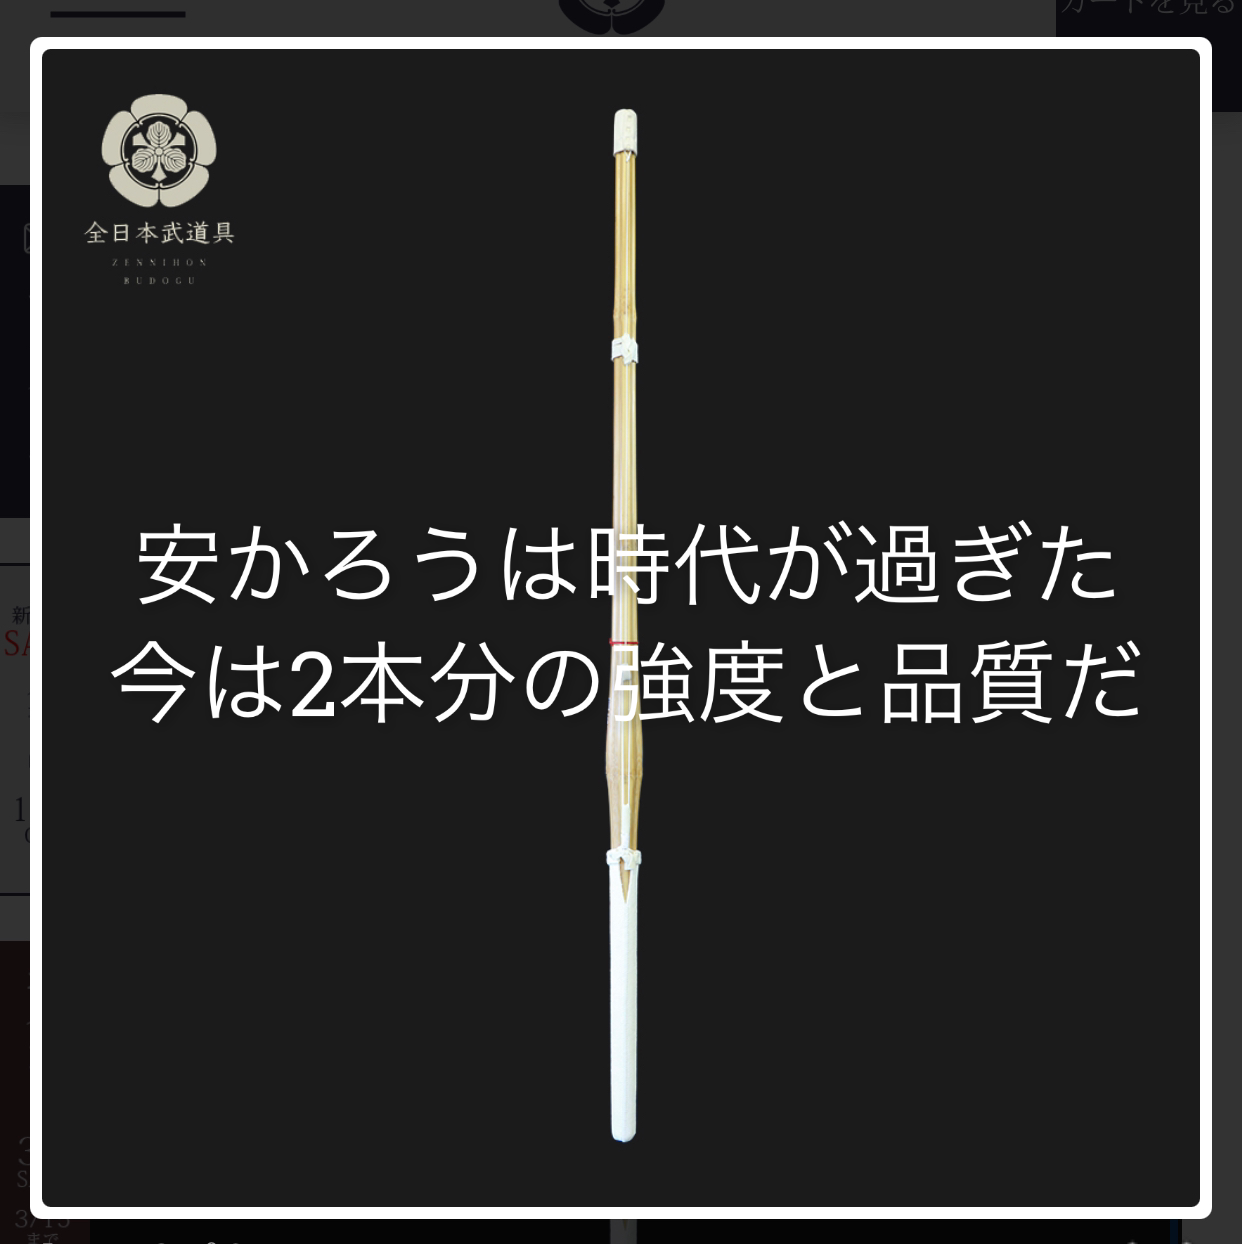 日向 伝統的工芸品 変化自在 剣道 面 自由提案型